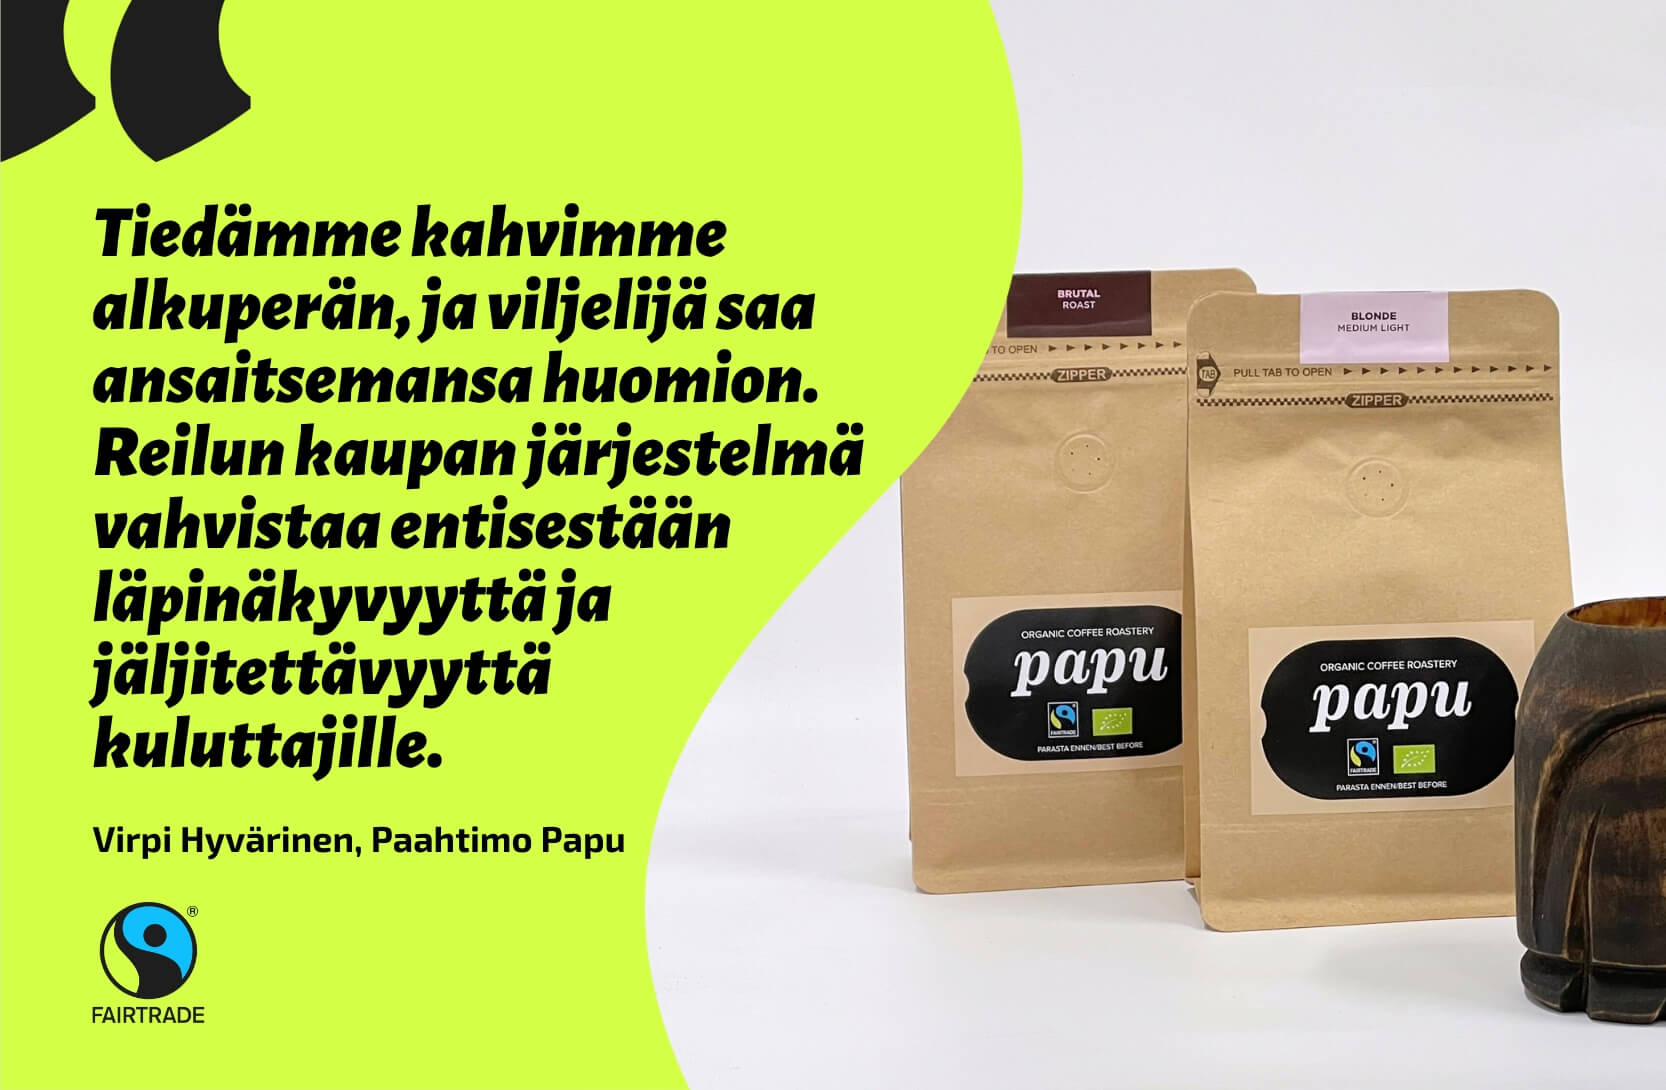 Paahtimo Papun Reilun kaupan kahveja ruskeissa paperipusseissa. Lainaus: Tiedämme tarkkaan, mistä kahvimme tulee, ja viljelijä saa ansaitsemansa huomion. Reilun kaupan järjestelmä vahvistaa entisestään läpinäkyvyyttä ja jäljitettävyyttä kuluttajille.